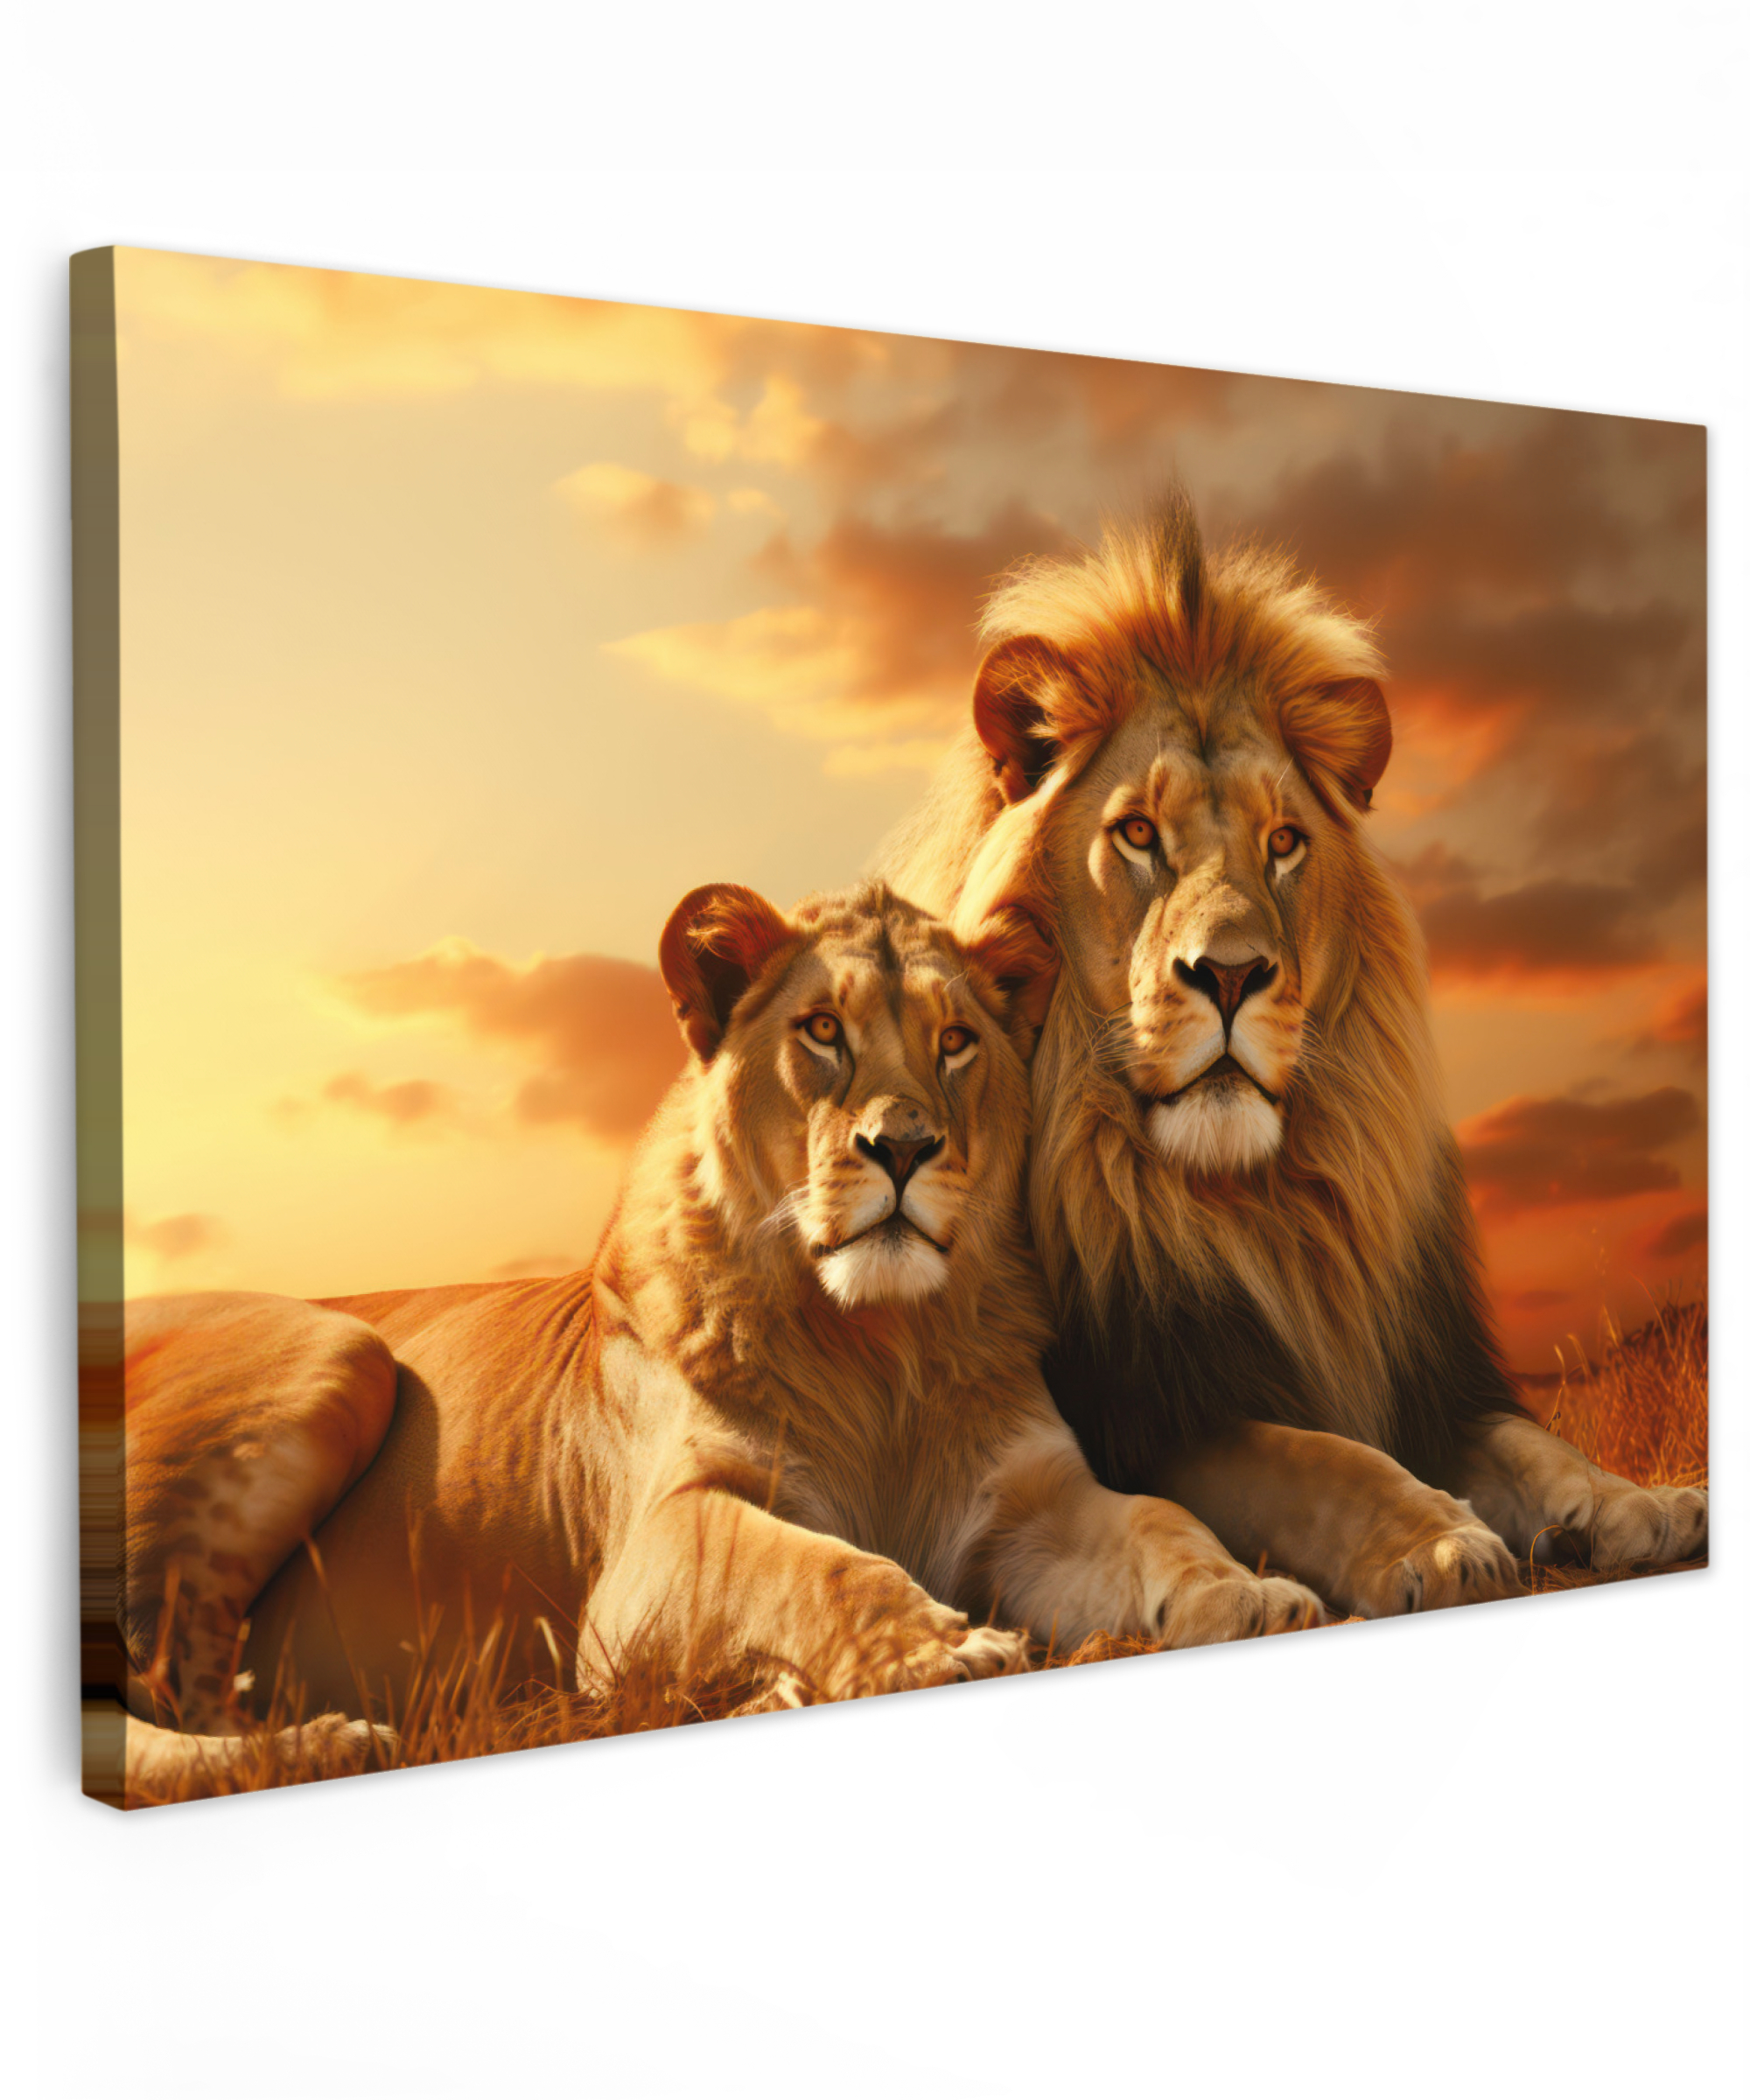 Tableau sur toile - Lions - Coucher de soleil - Afrique - Savane - Animaux